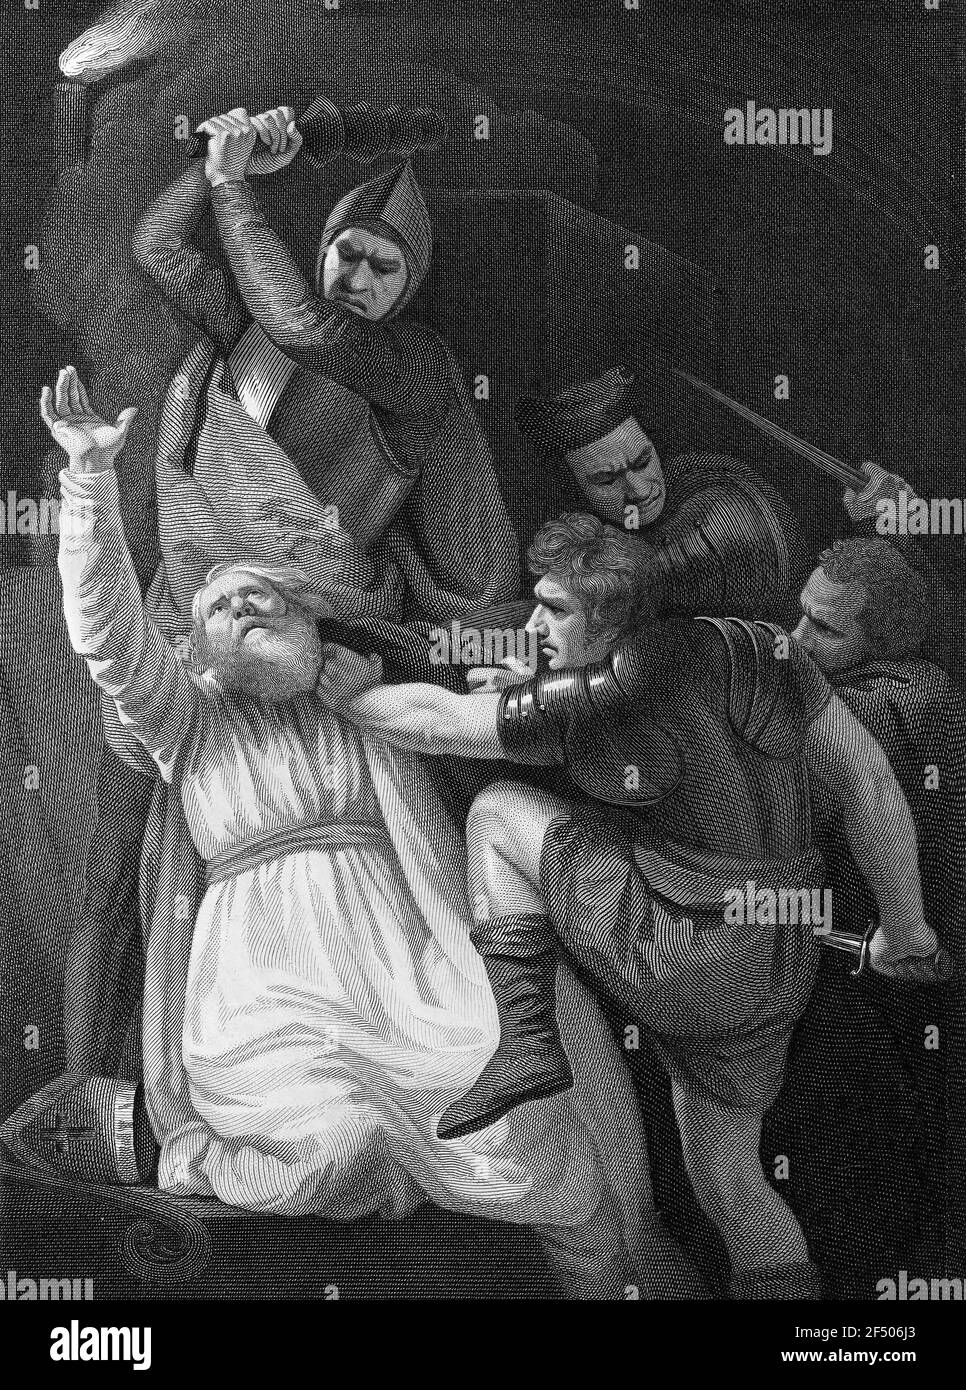 Thomas Becket. Un'illustrazione del 1793 di James Stow dopo un lavoro di John Opie, che mostra l'assassinio di Thomas a Becket. San Tommaso Becket (1119/1120-1170) fu arcivescovo di Canterbury quando fu ucciso dai seguaci del re Enrico II d'Inghilterra nel 1170 Foto Stock